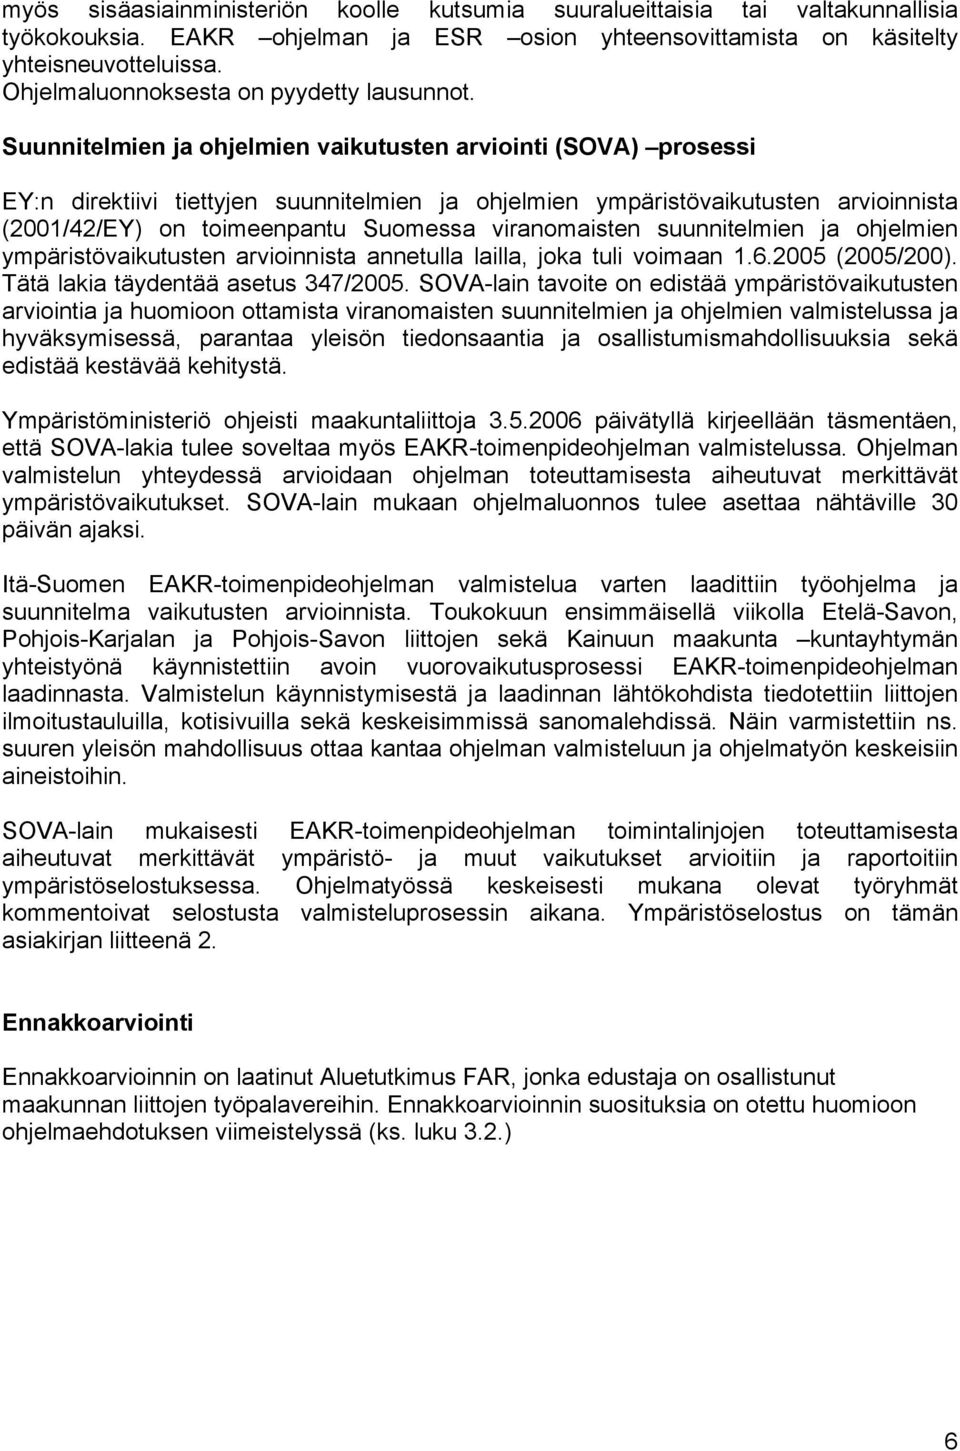 Suunnitelmien ja ohjelmien vaikutusten arviointi (SOVA) prosessi EY:n direktiivi tiettyjen suunnitelmien ja ohjelmien ympäristövaikutusten arvioinnista (2001/42/EY) on toimeenpantu Suomessa